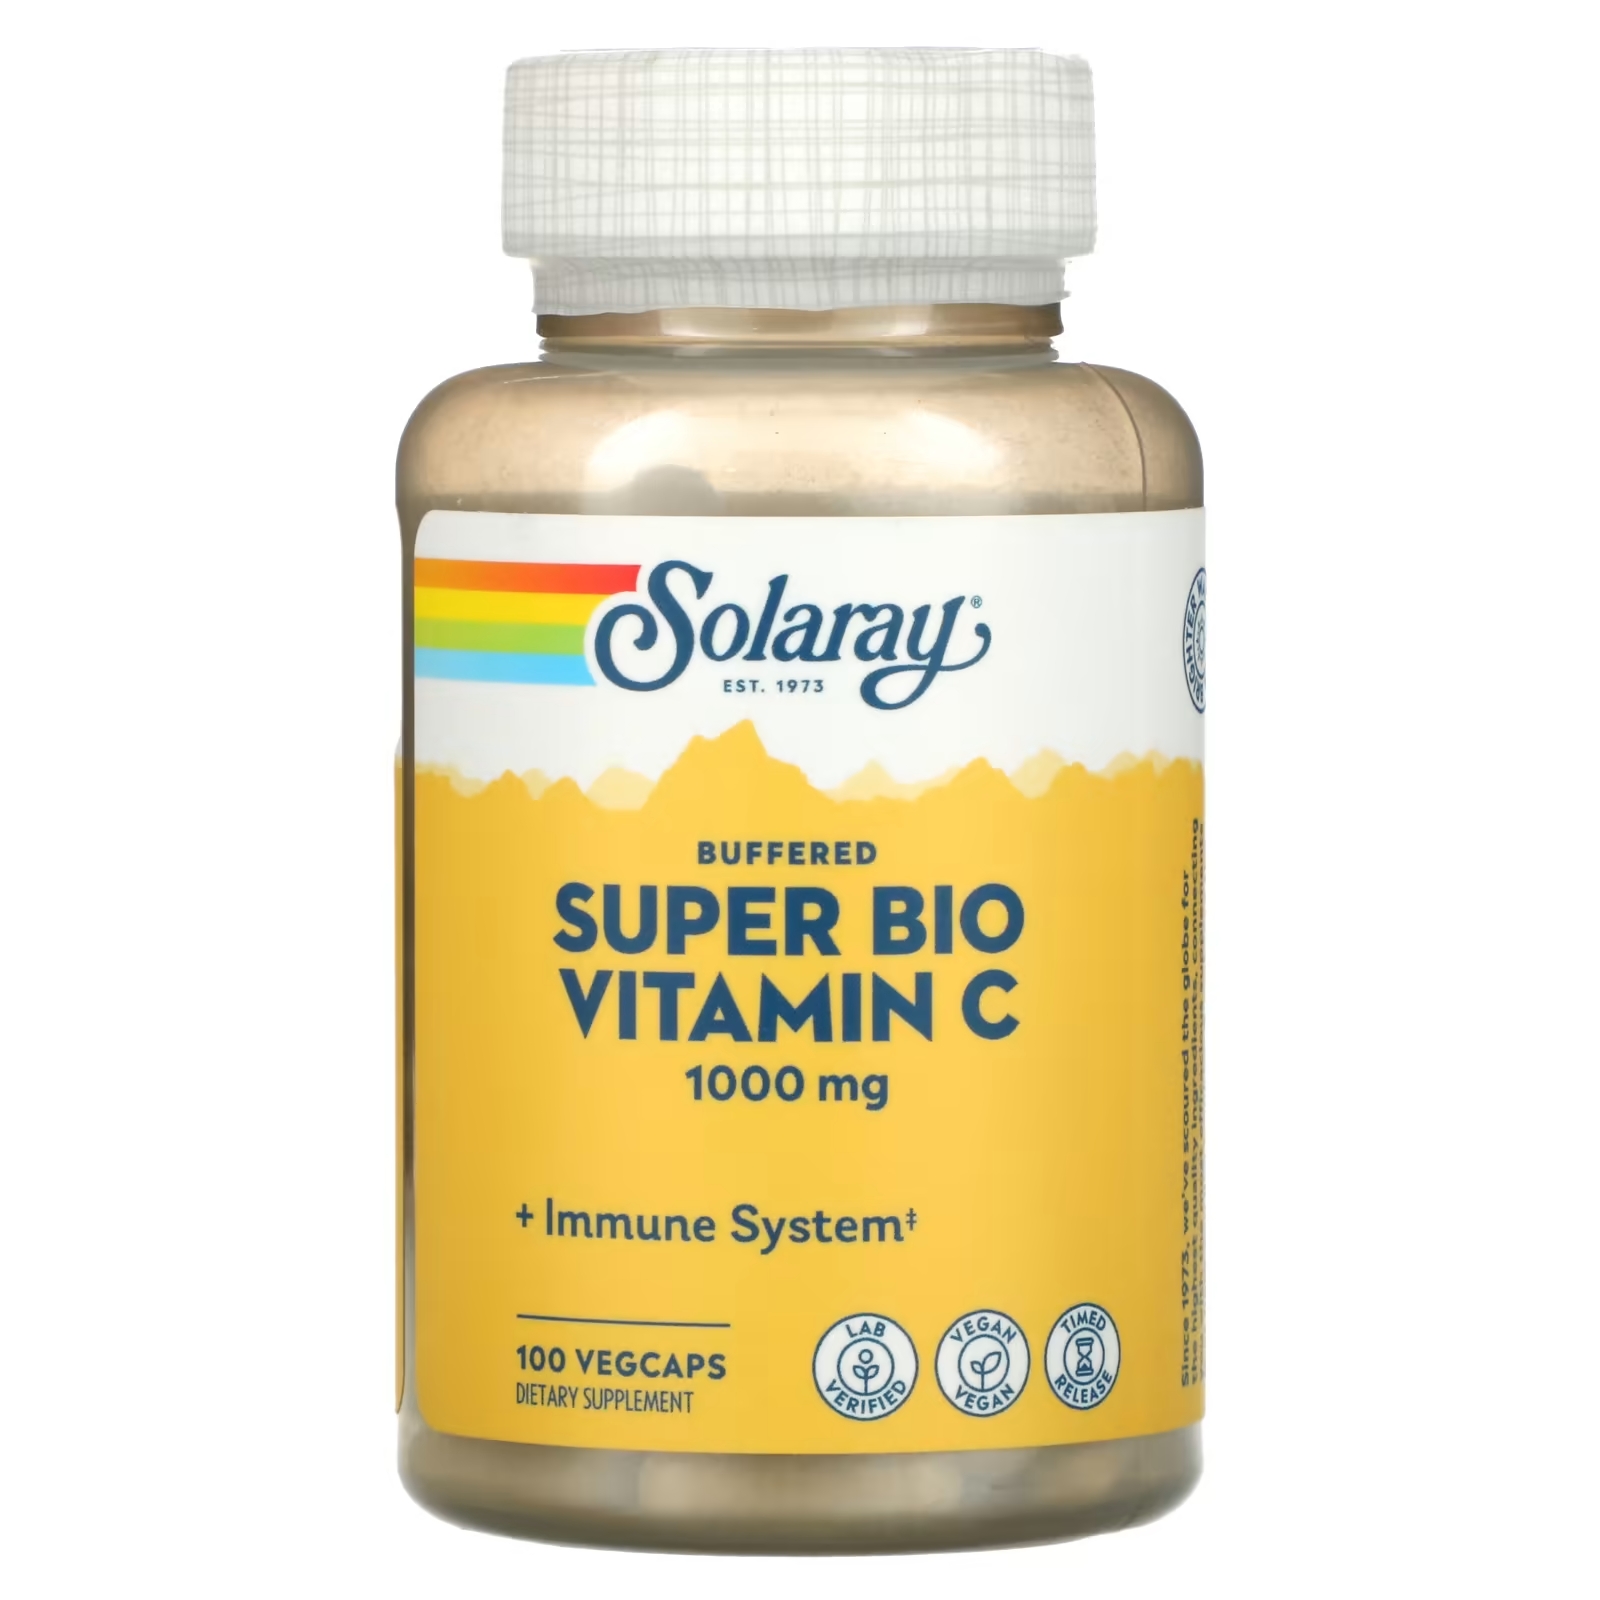 Solaray Super Bio Vitamin C витамин C медленного высвобождения, 100 вегетарианских капсул